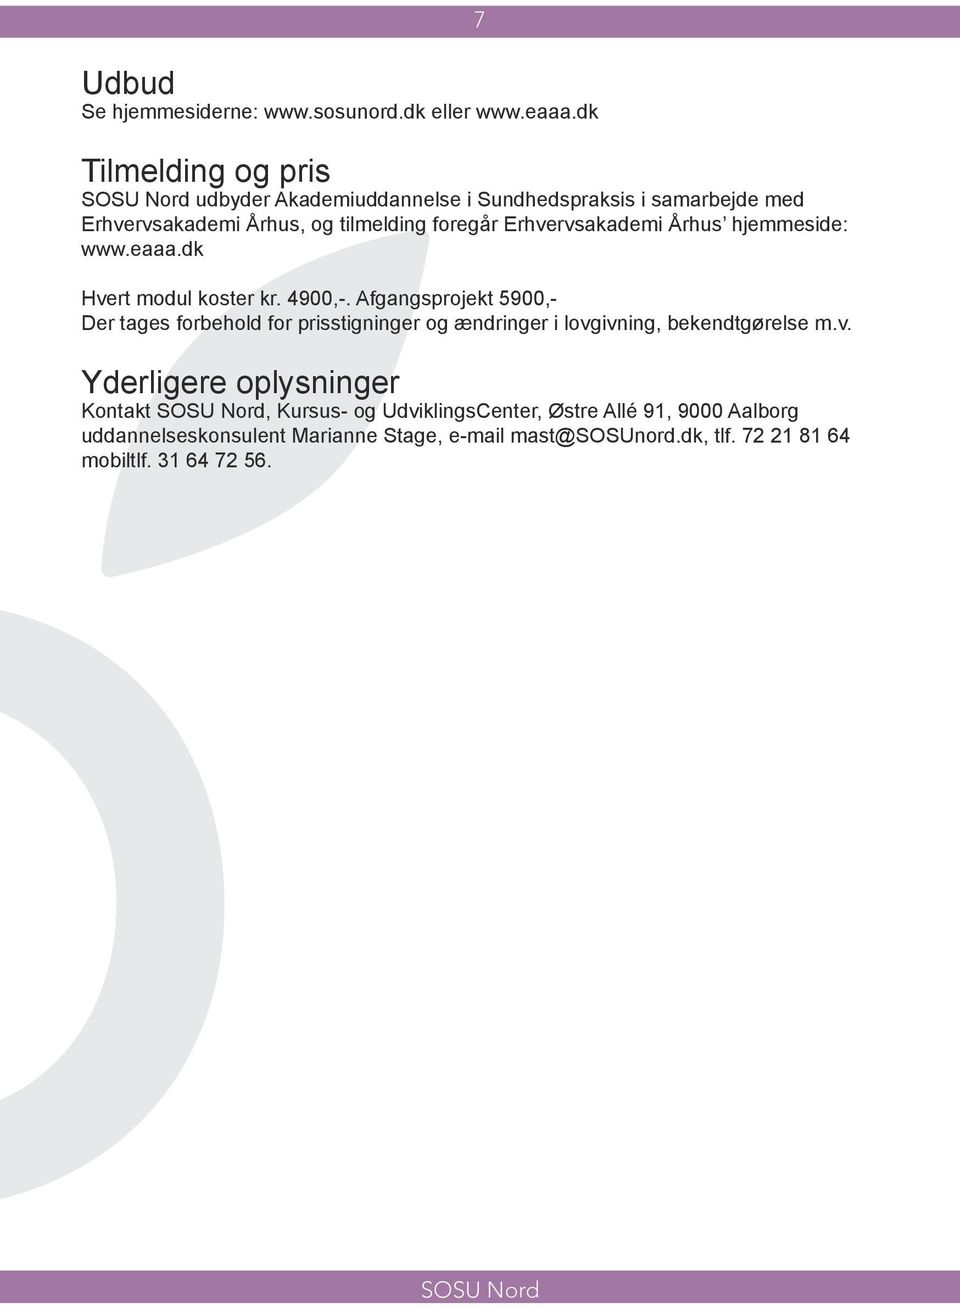 Erhvervsakademi Århus hjemmeside: www.eaaa.dk Hvert modul koster kr. 4900,-.